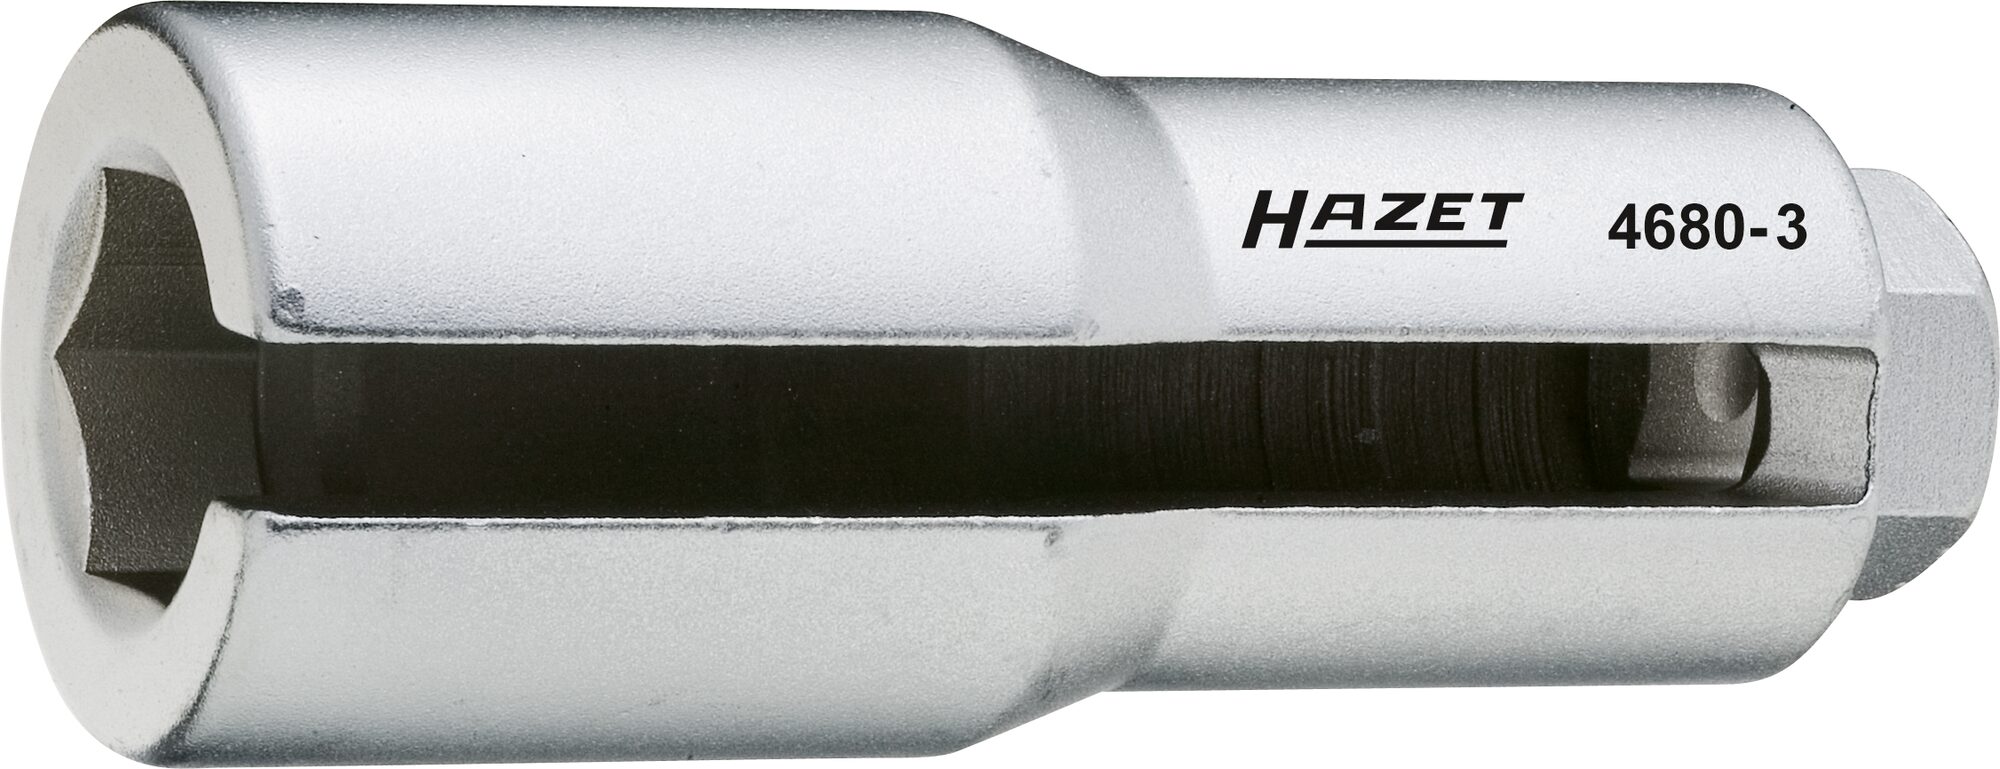 HAZET Lambda-Sonden Einsatz 4680-3 · Vierkant hohl 12,5 mm (1/2 Zoll) · Außen Sechskant Profil · 22 mm